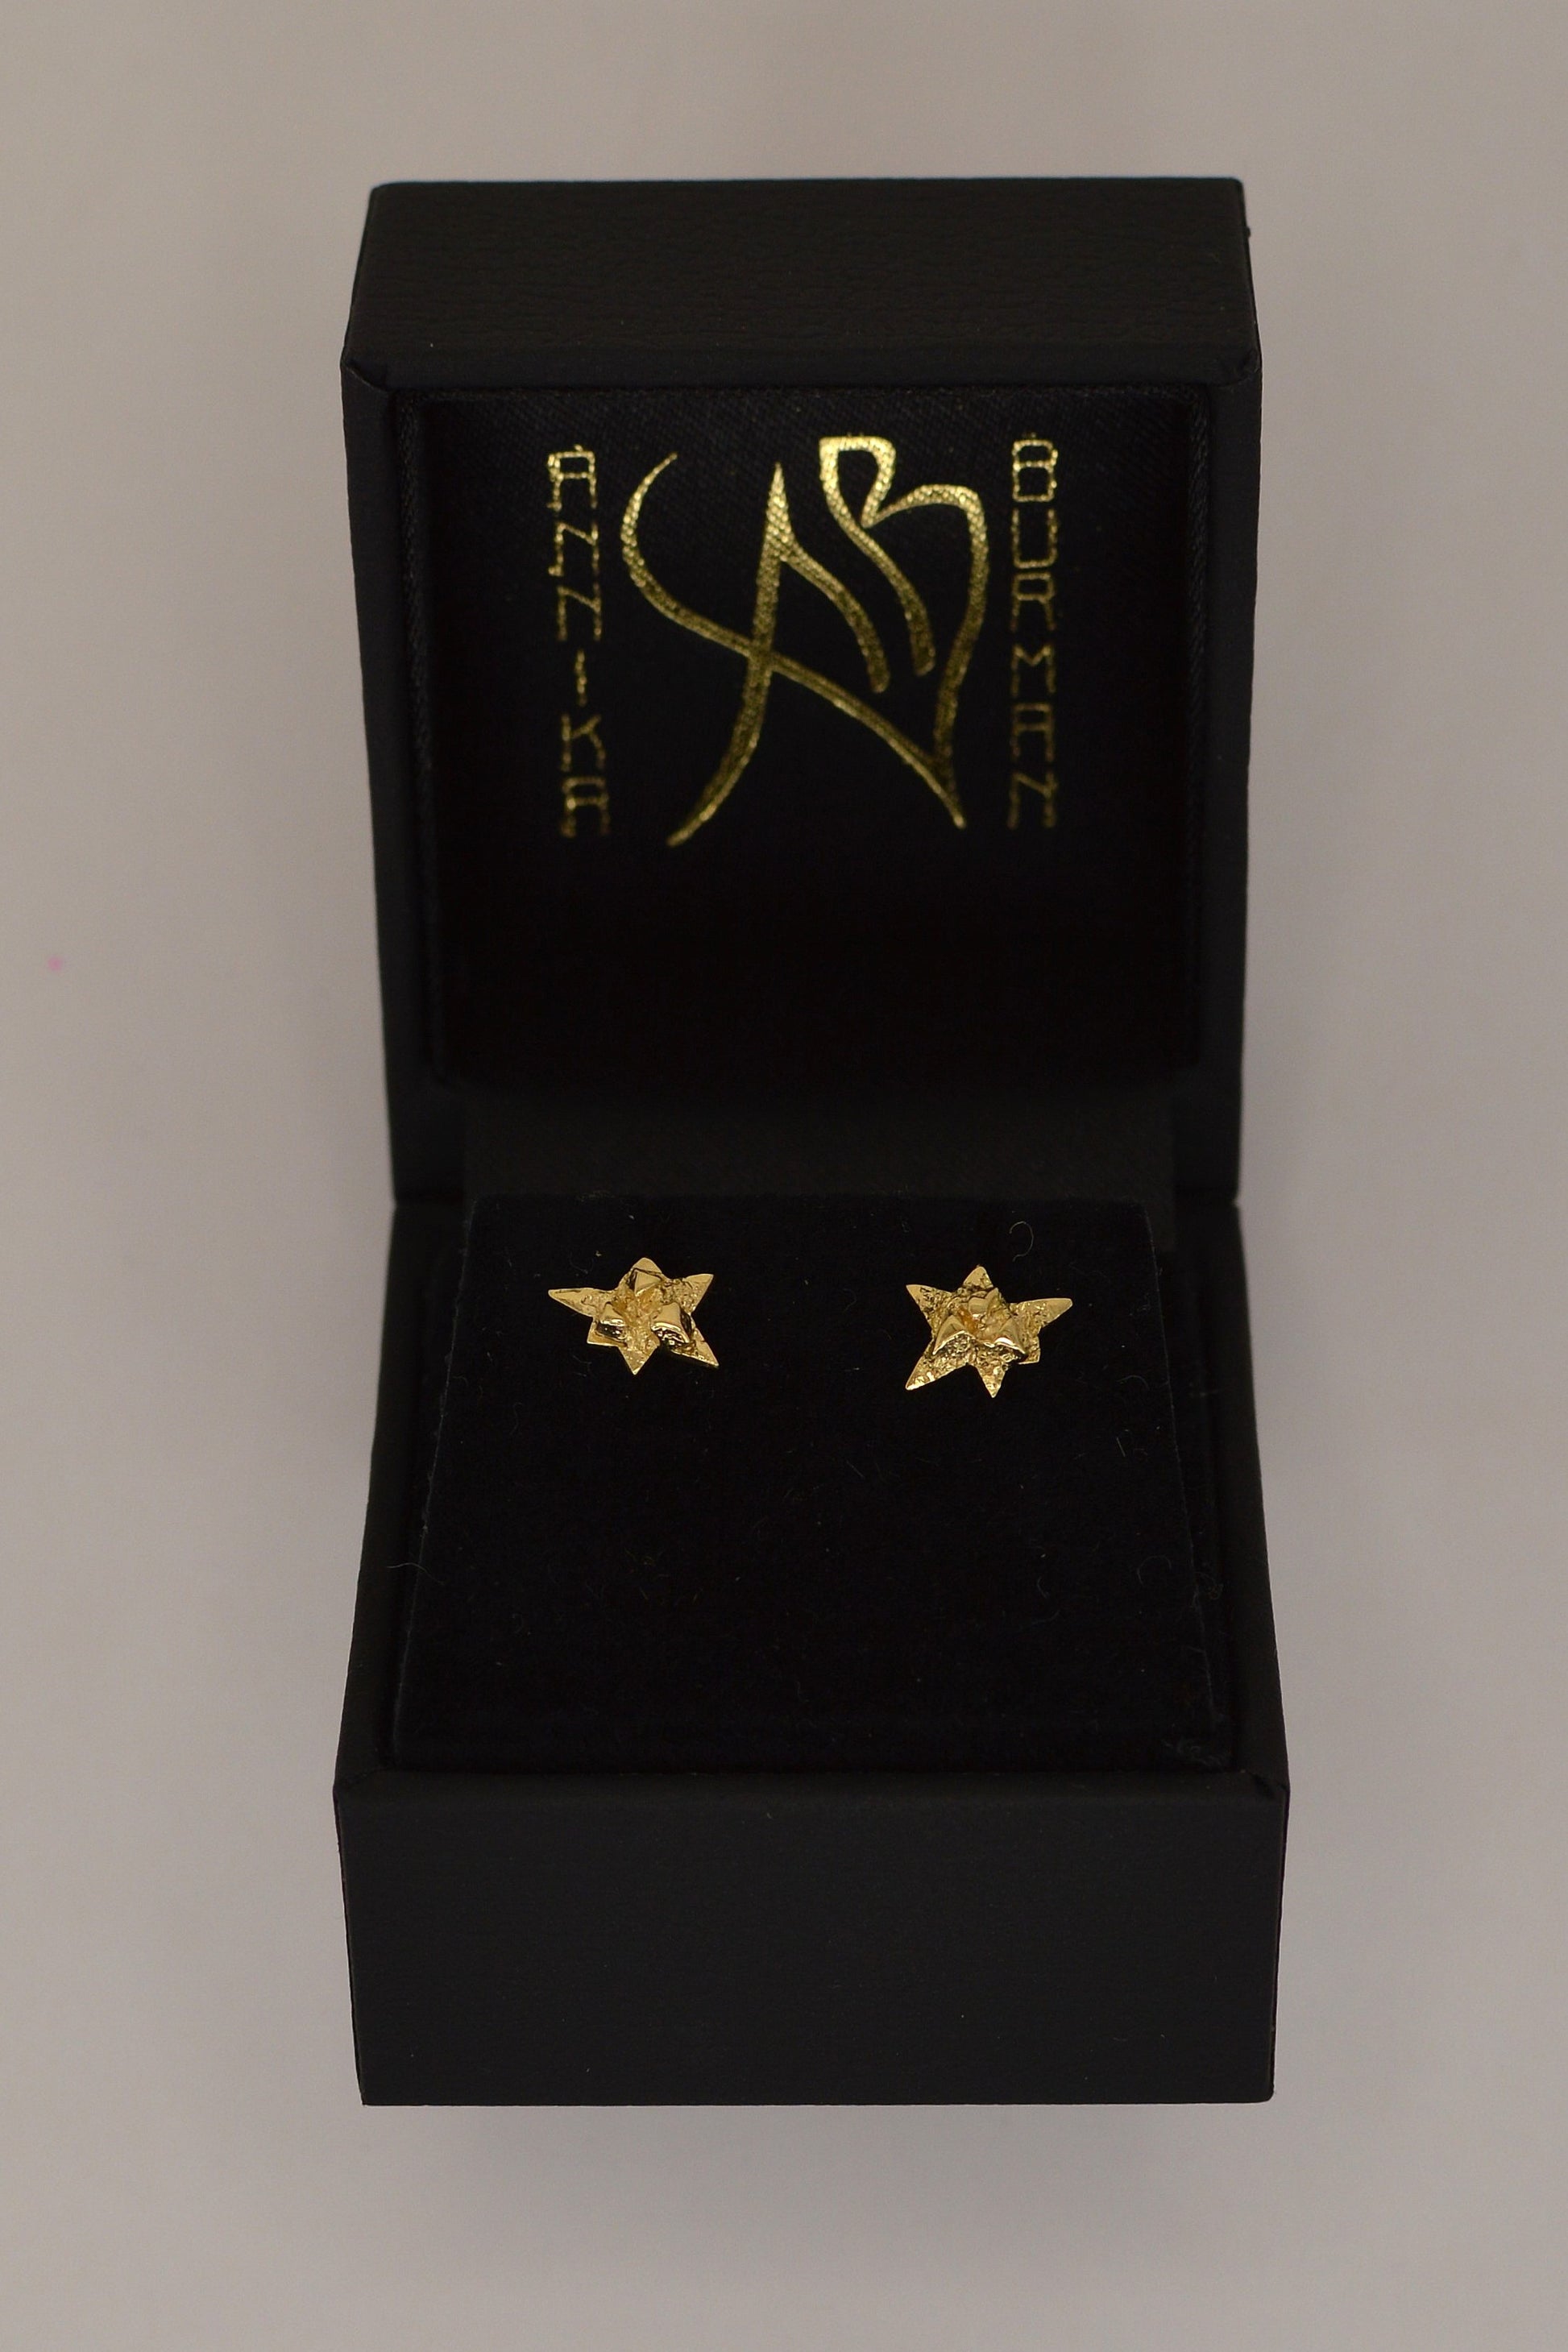 Nova gold earrings by Annika Burman in branded packaging